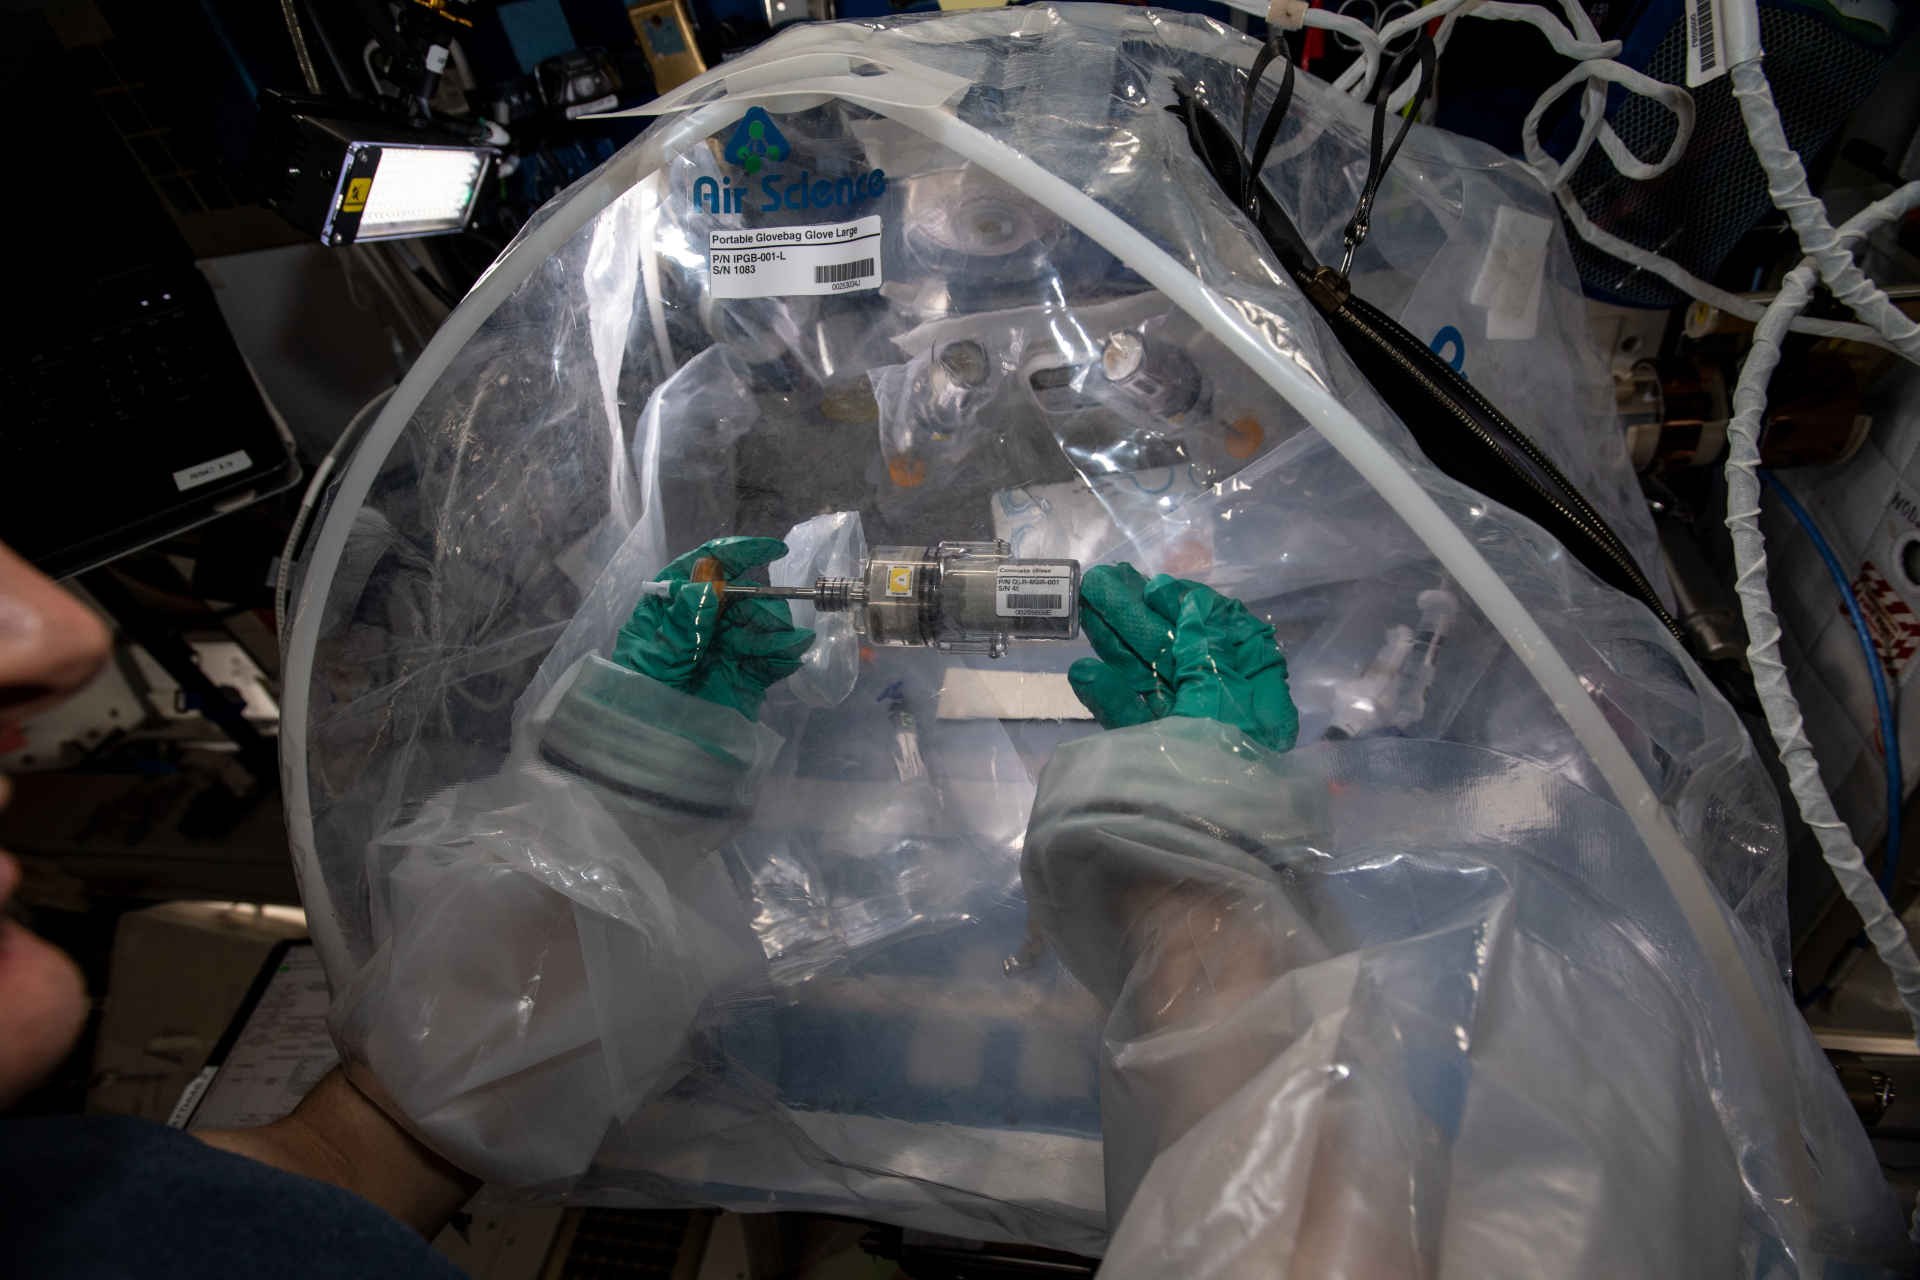 Zum Schutz vor Verunreinigung der Raumstation wird das Experiment in einer Handschuhkiste /Glove Box durchgeführt